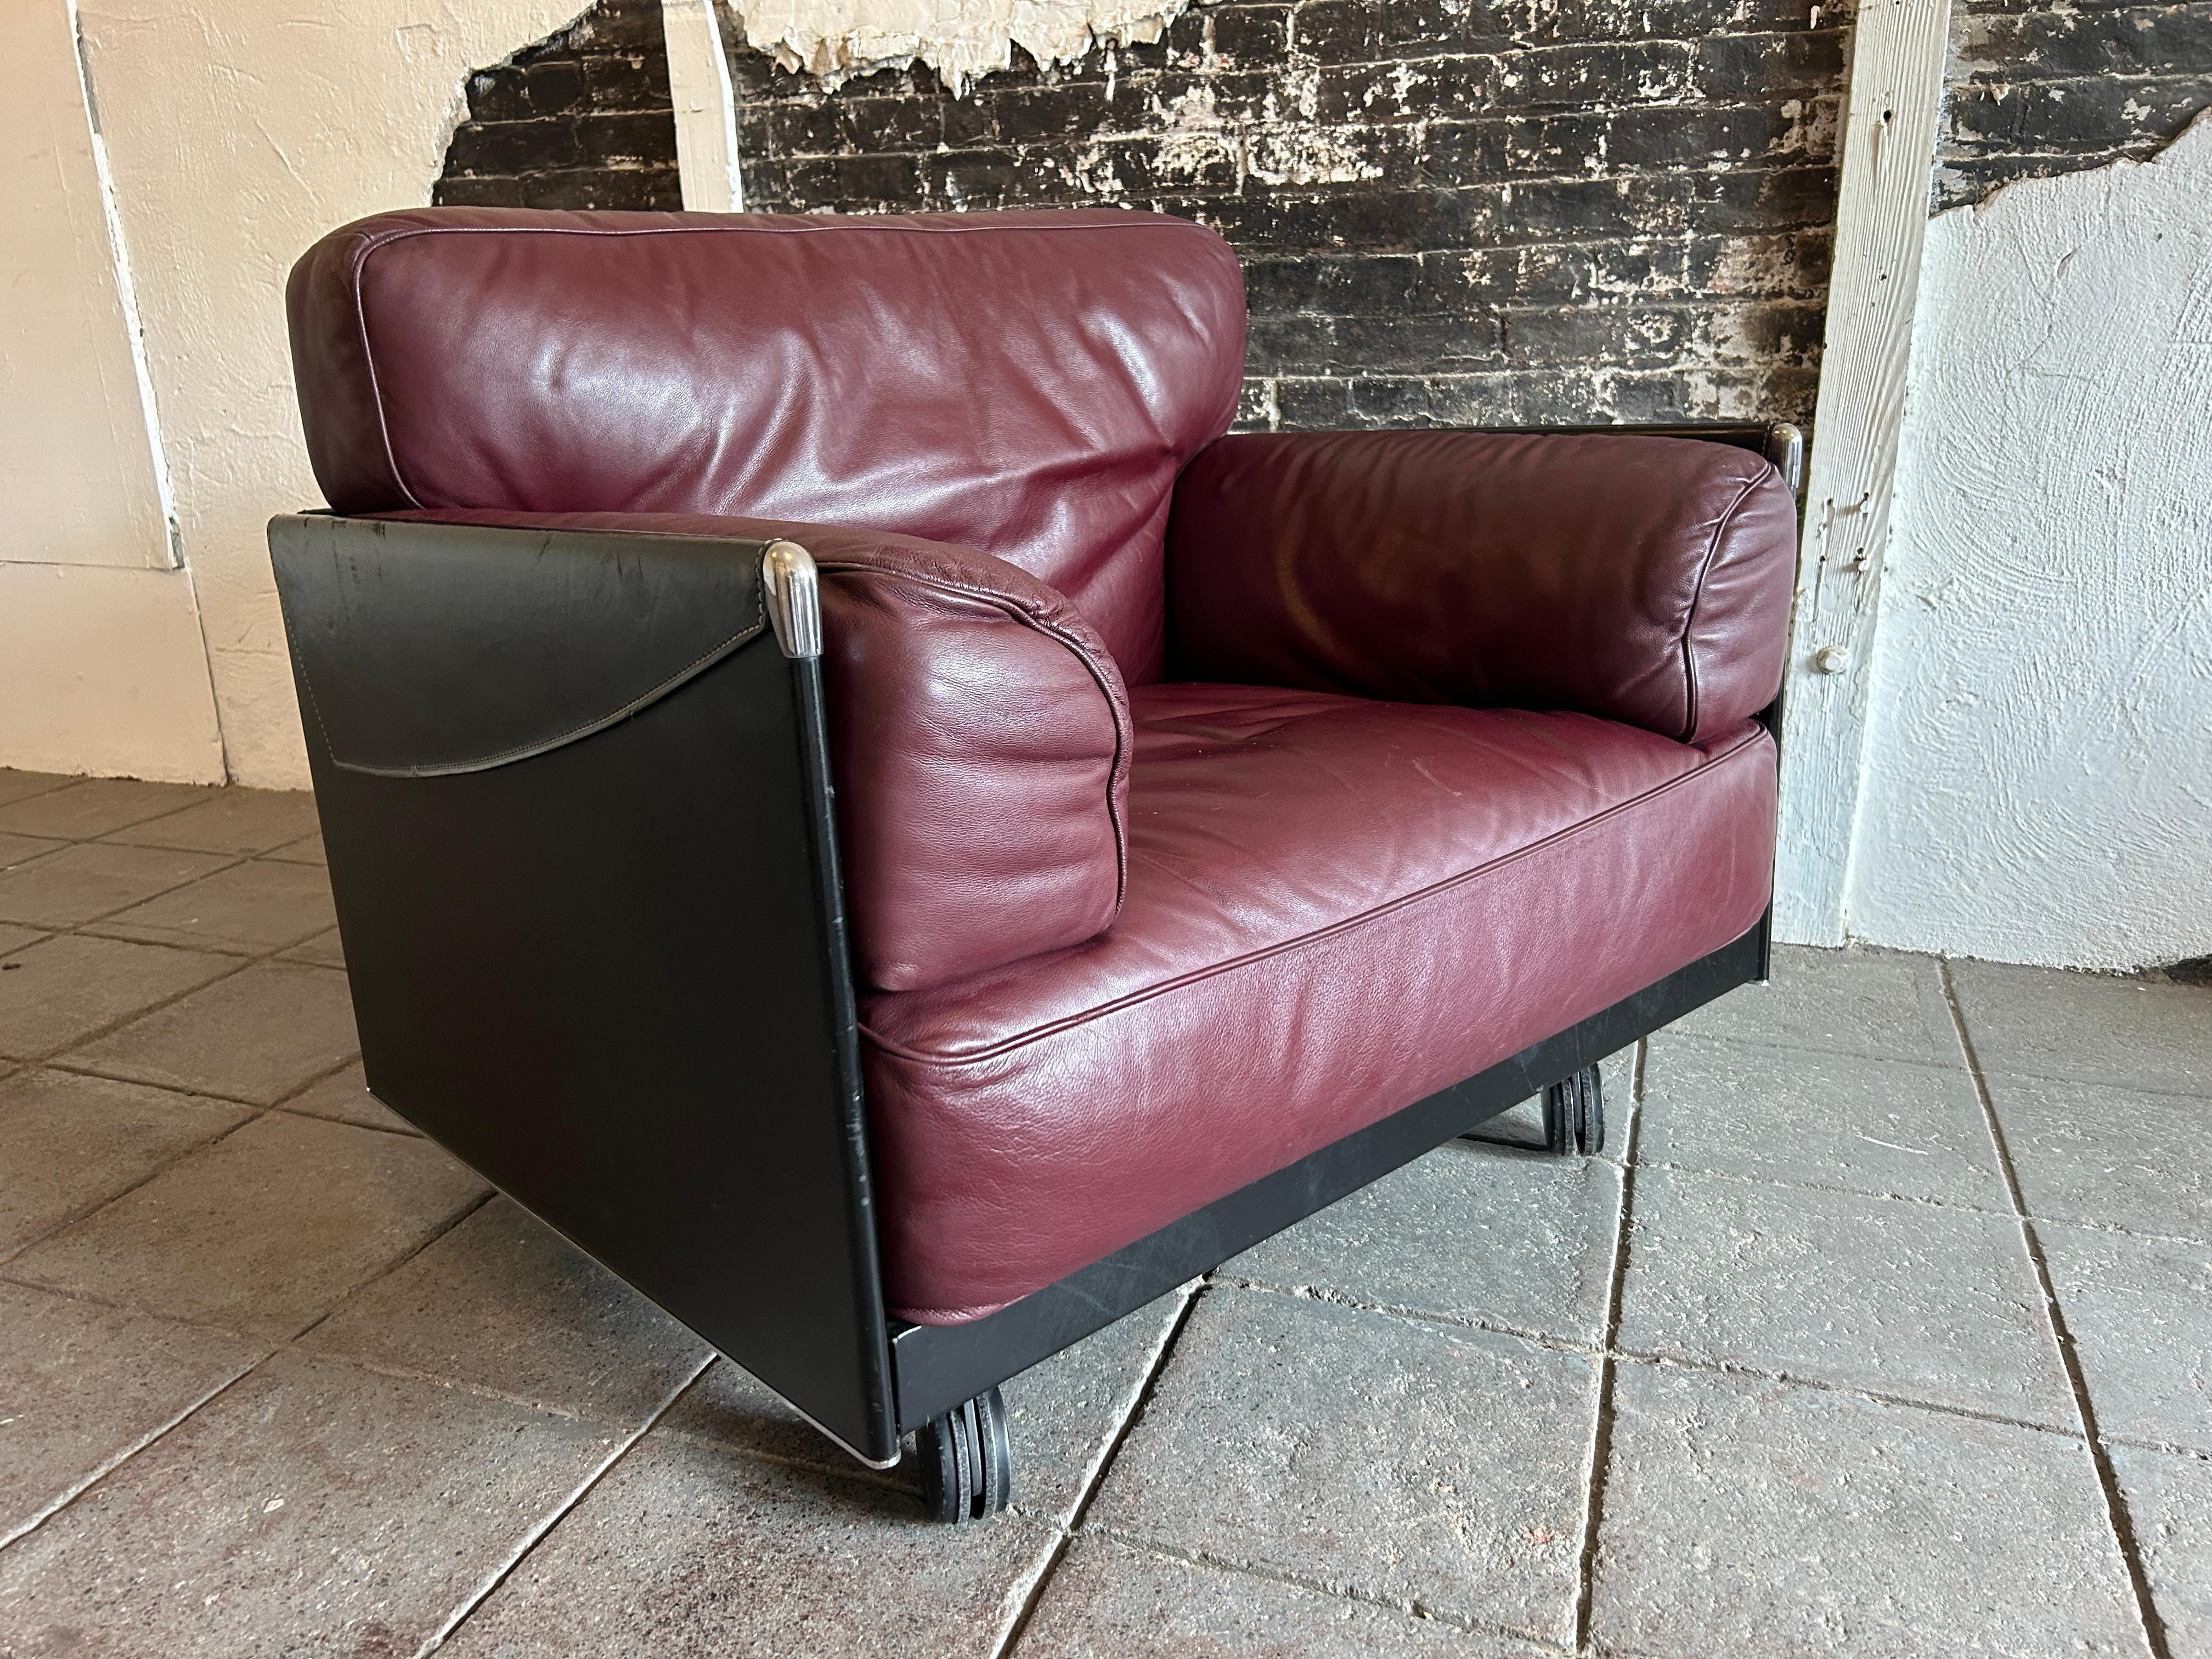 Vintage Mid-Century Modern Maroon Leder Lounge Stuhl von Tito Agnoli für Poltrona Frau Italien, um 1970. Niedriger, modern gestalteter Loungesessel mit 2 vorderen Rollen und 2 hinteren Beinen - sehr weiche, kastanienbraune, bauschige Lederkissen.